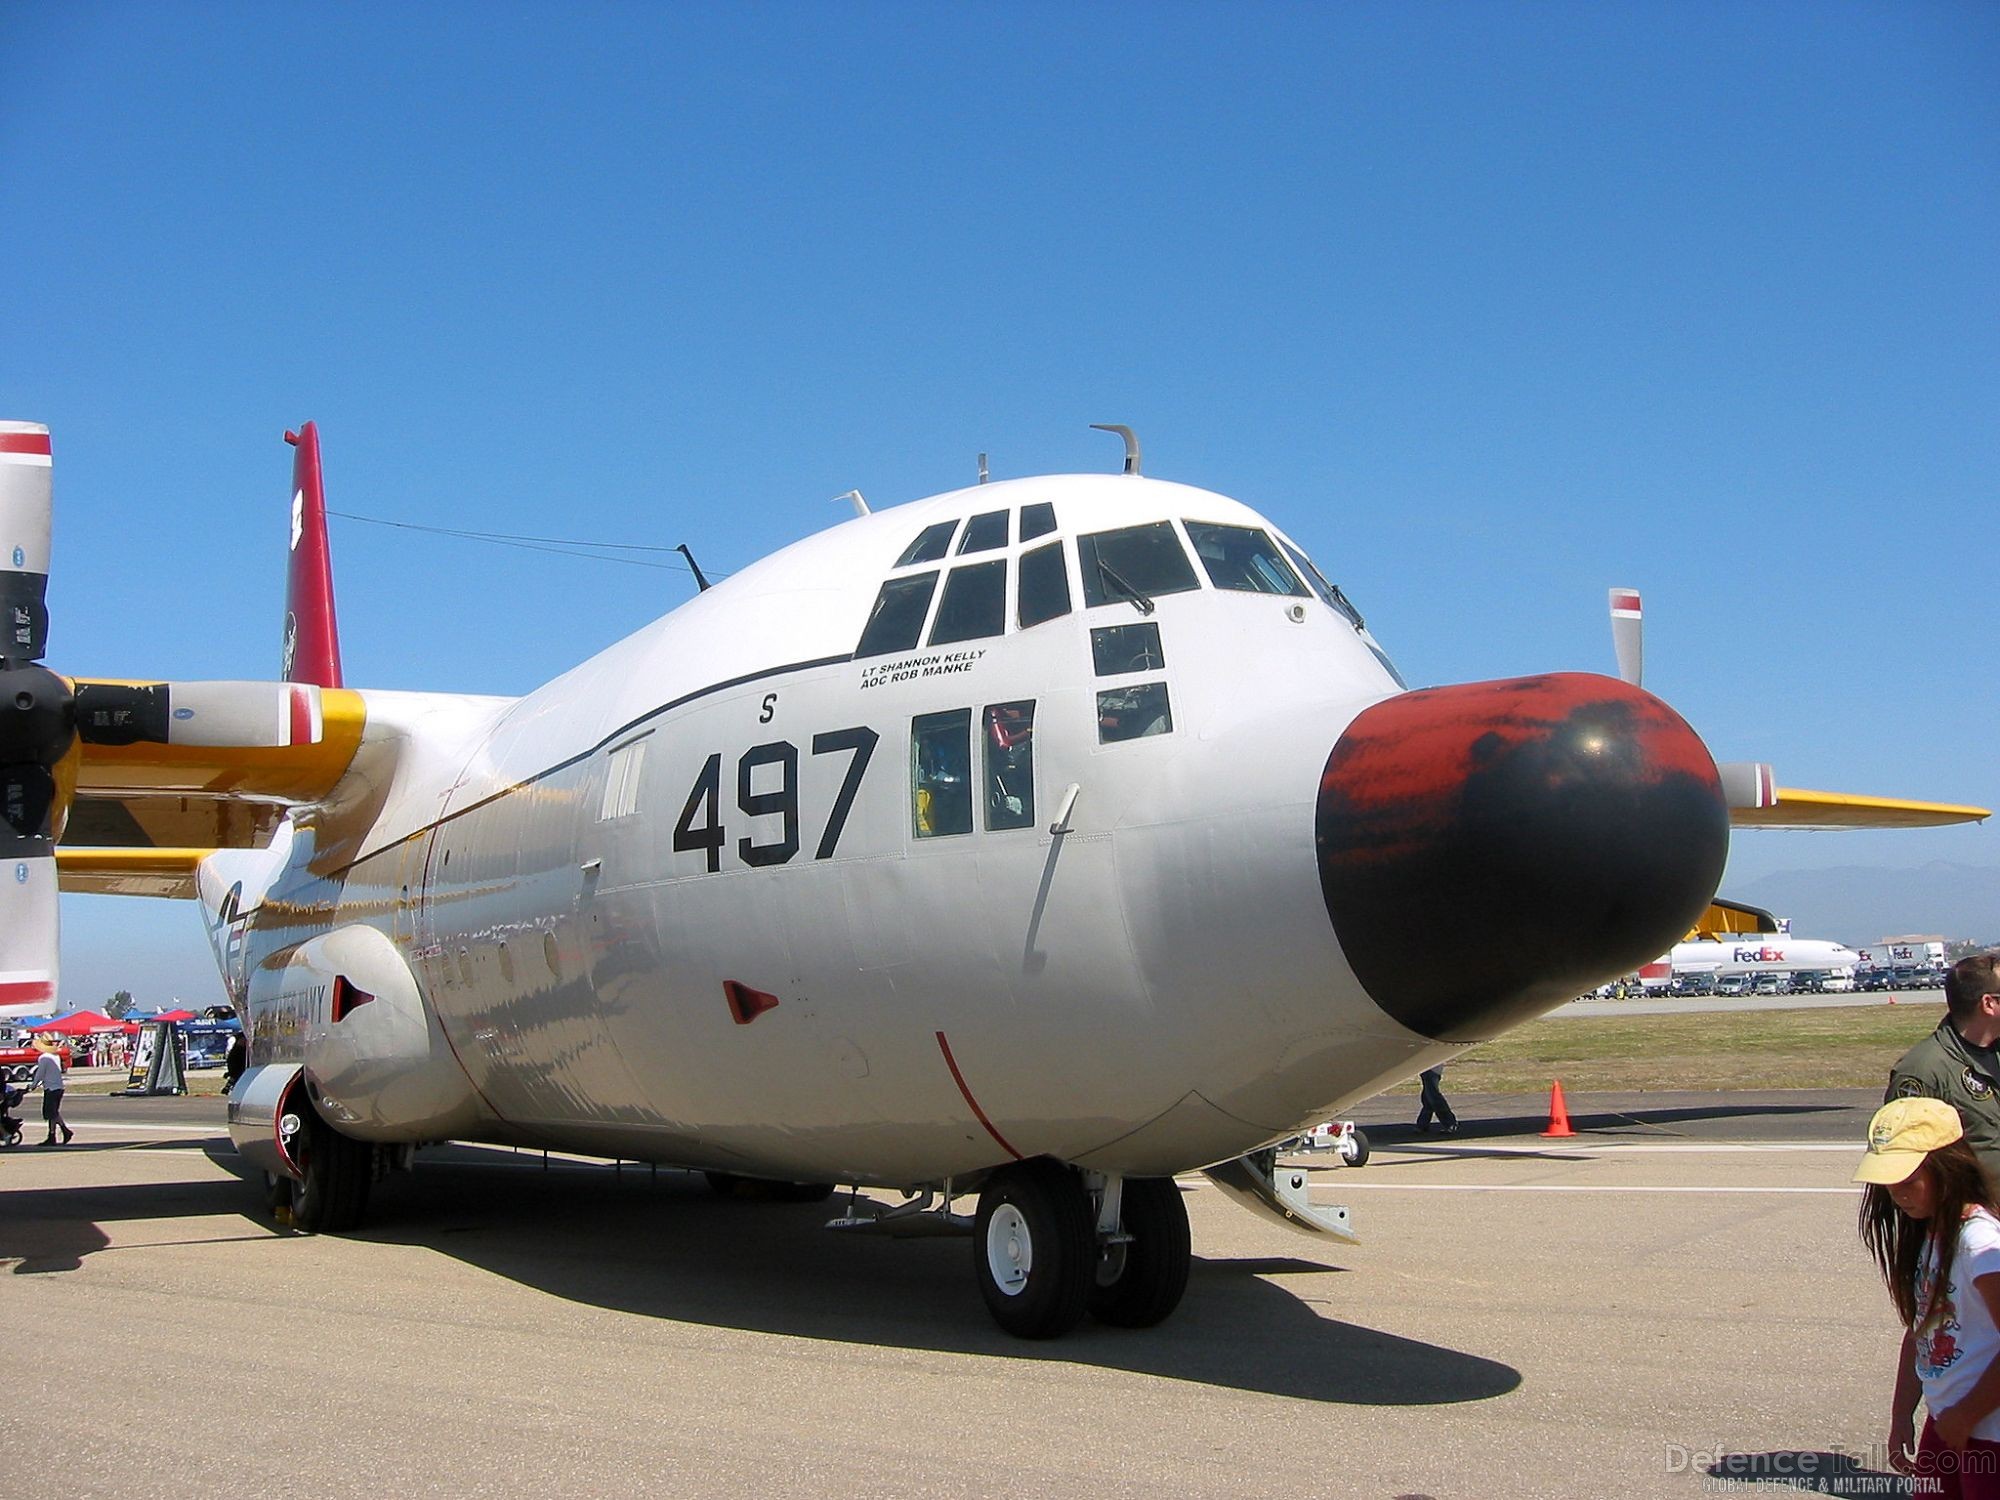 C-130 Aircraft - NBVC Air Show 2007